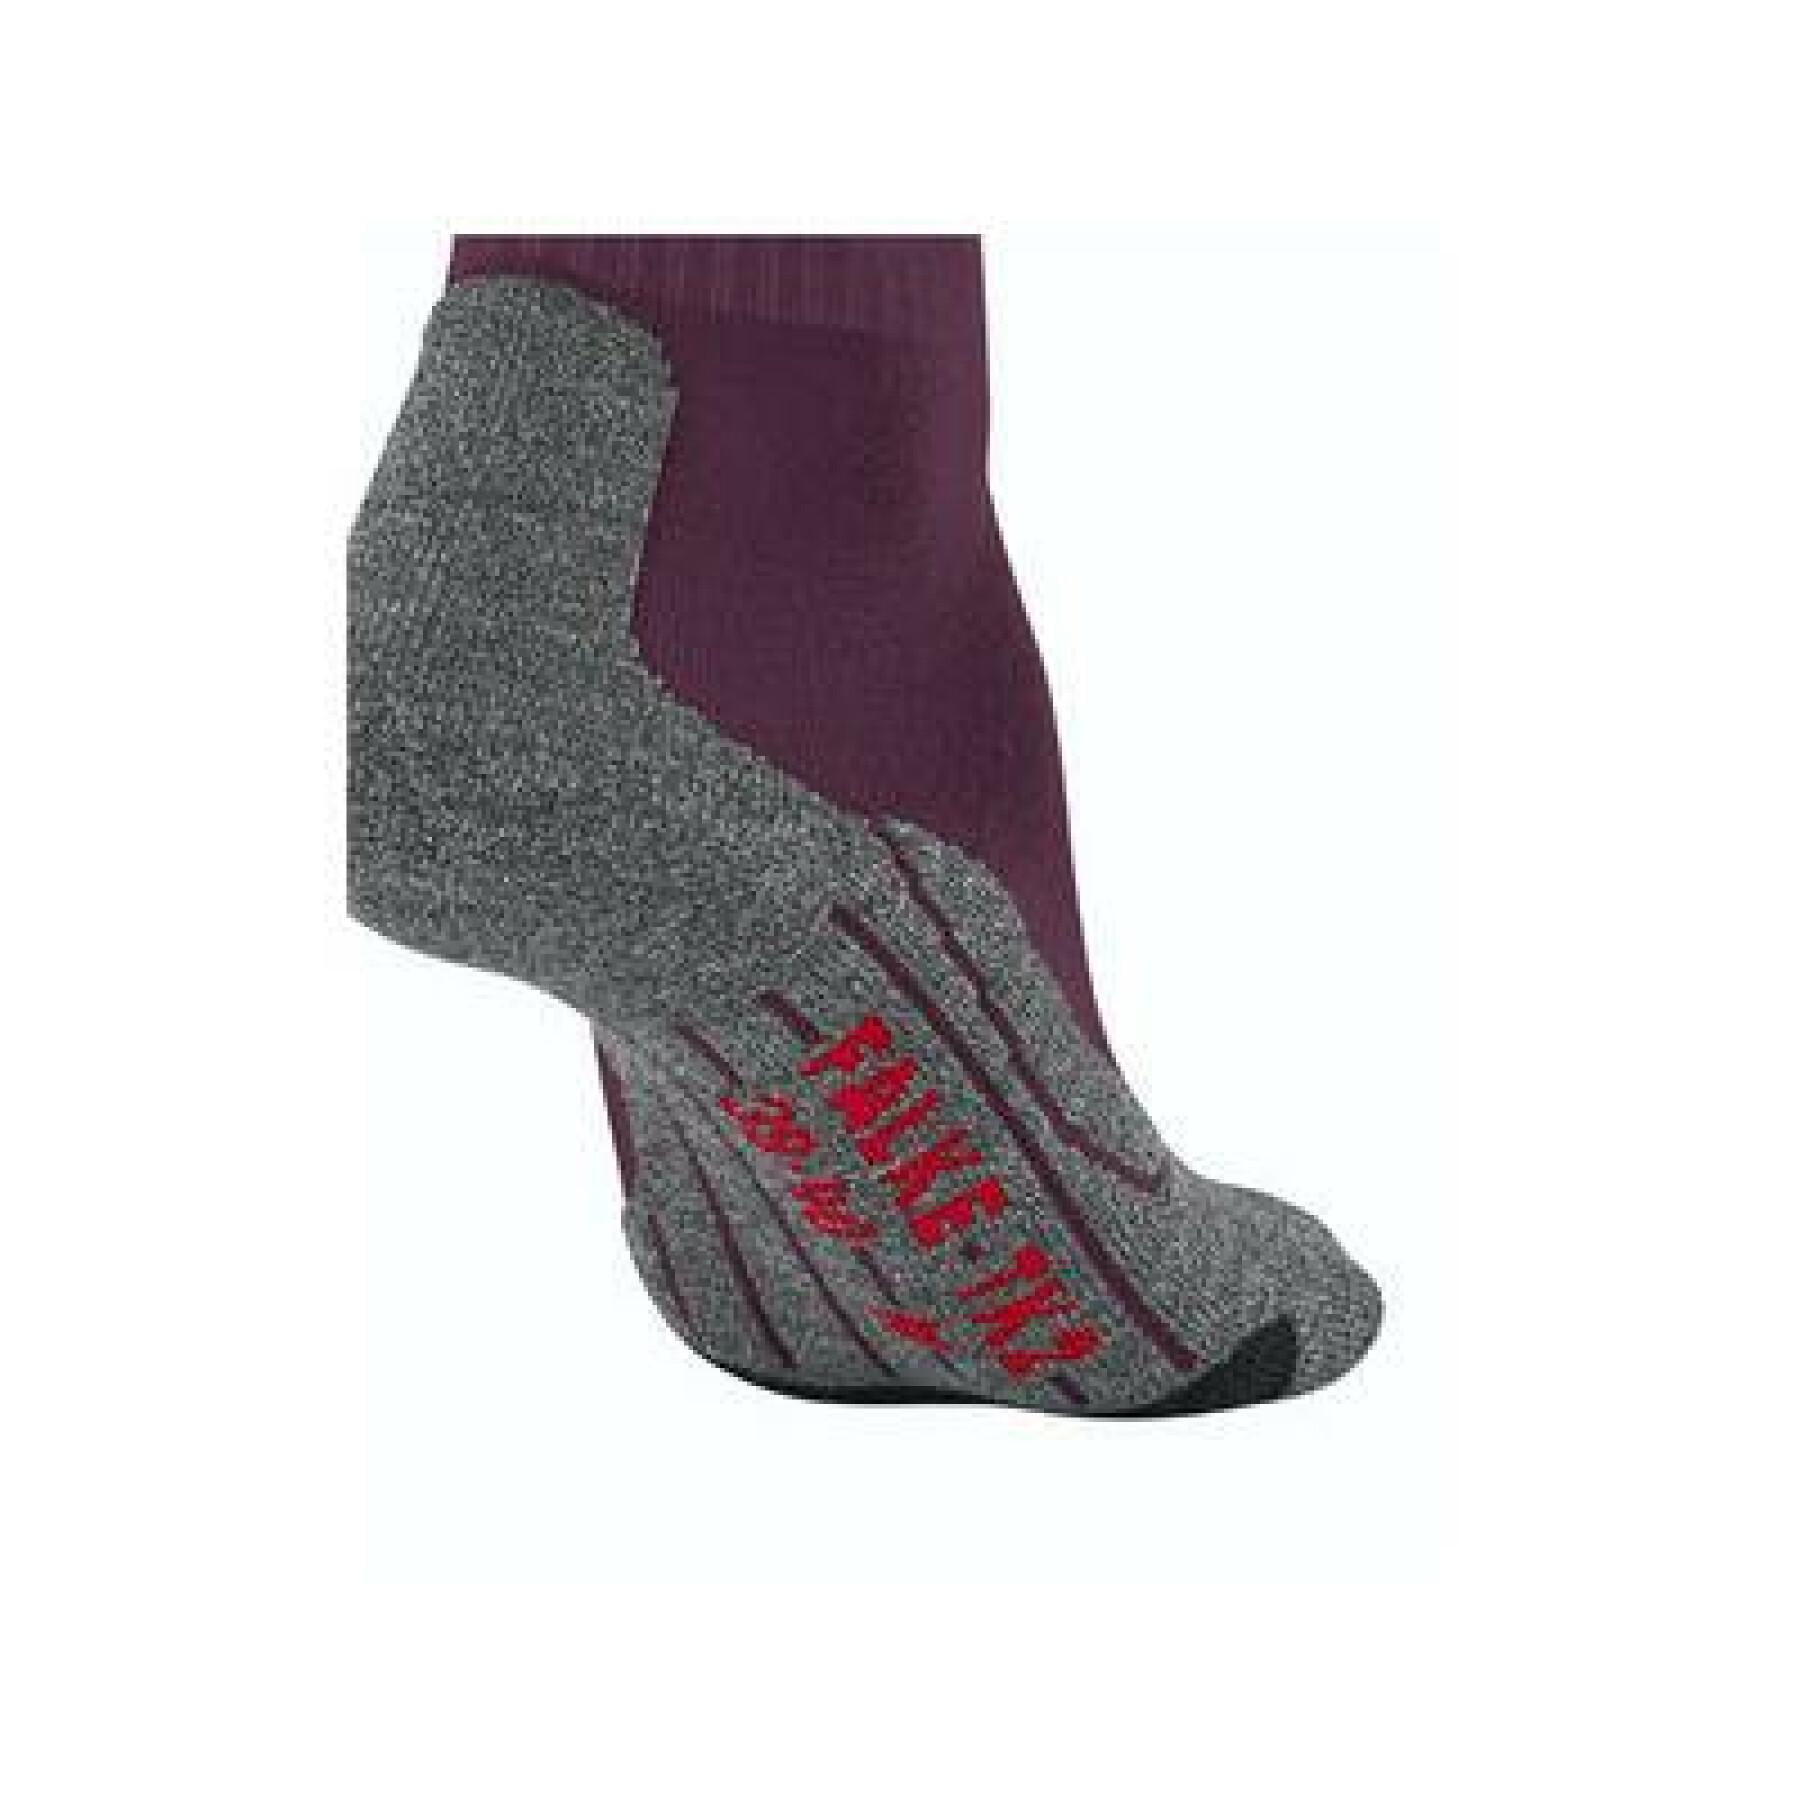 Women's socks Falke Tk2